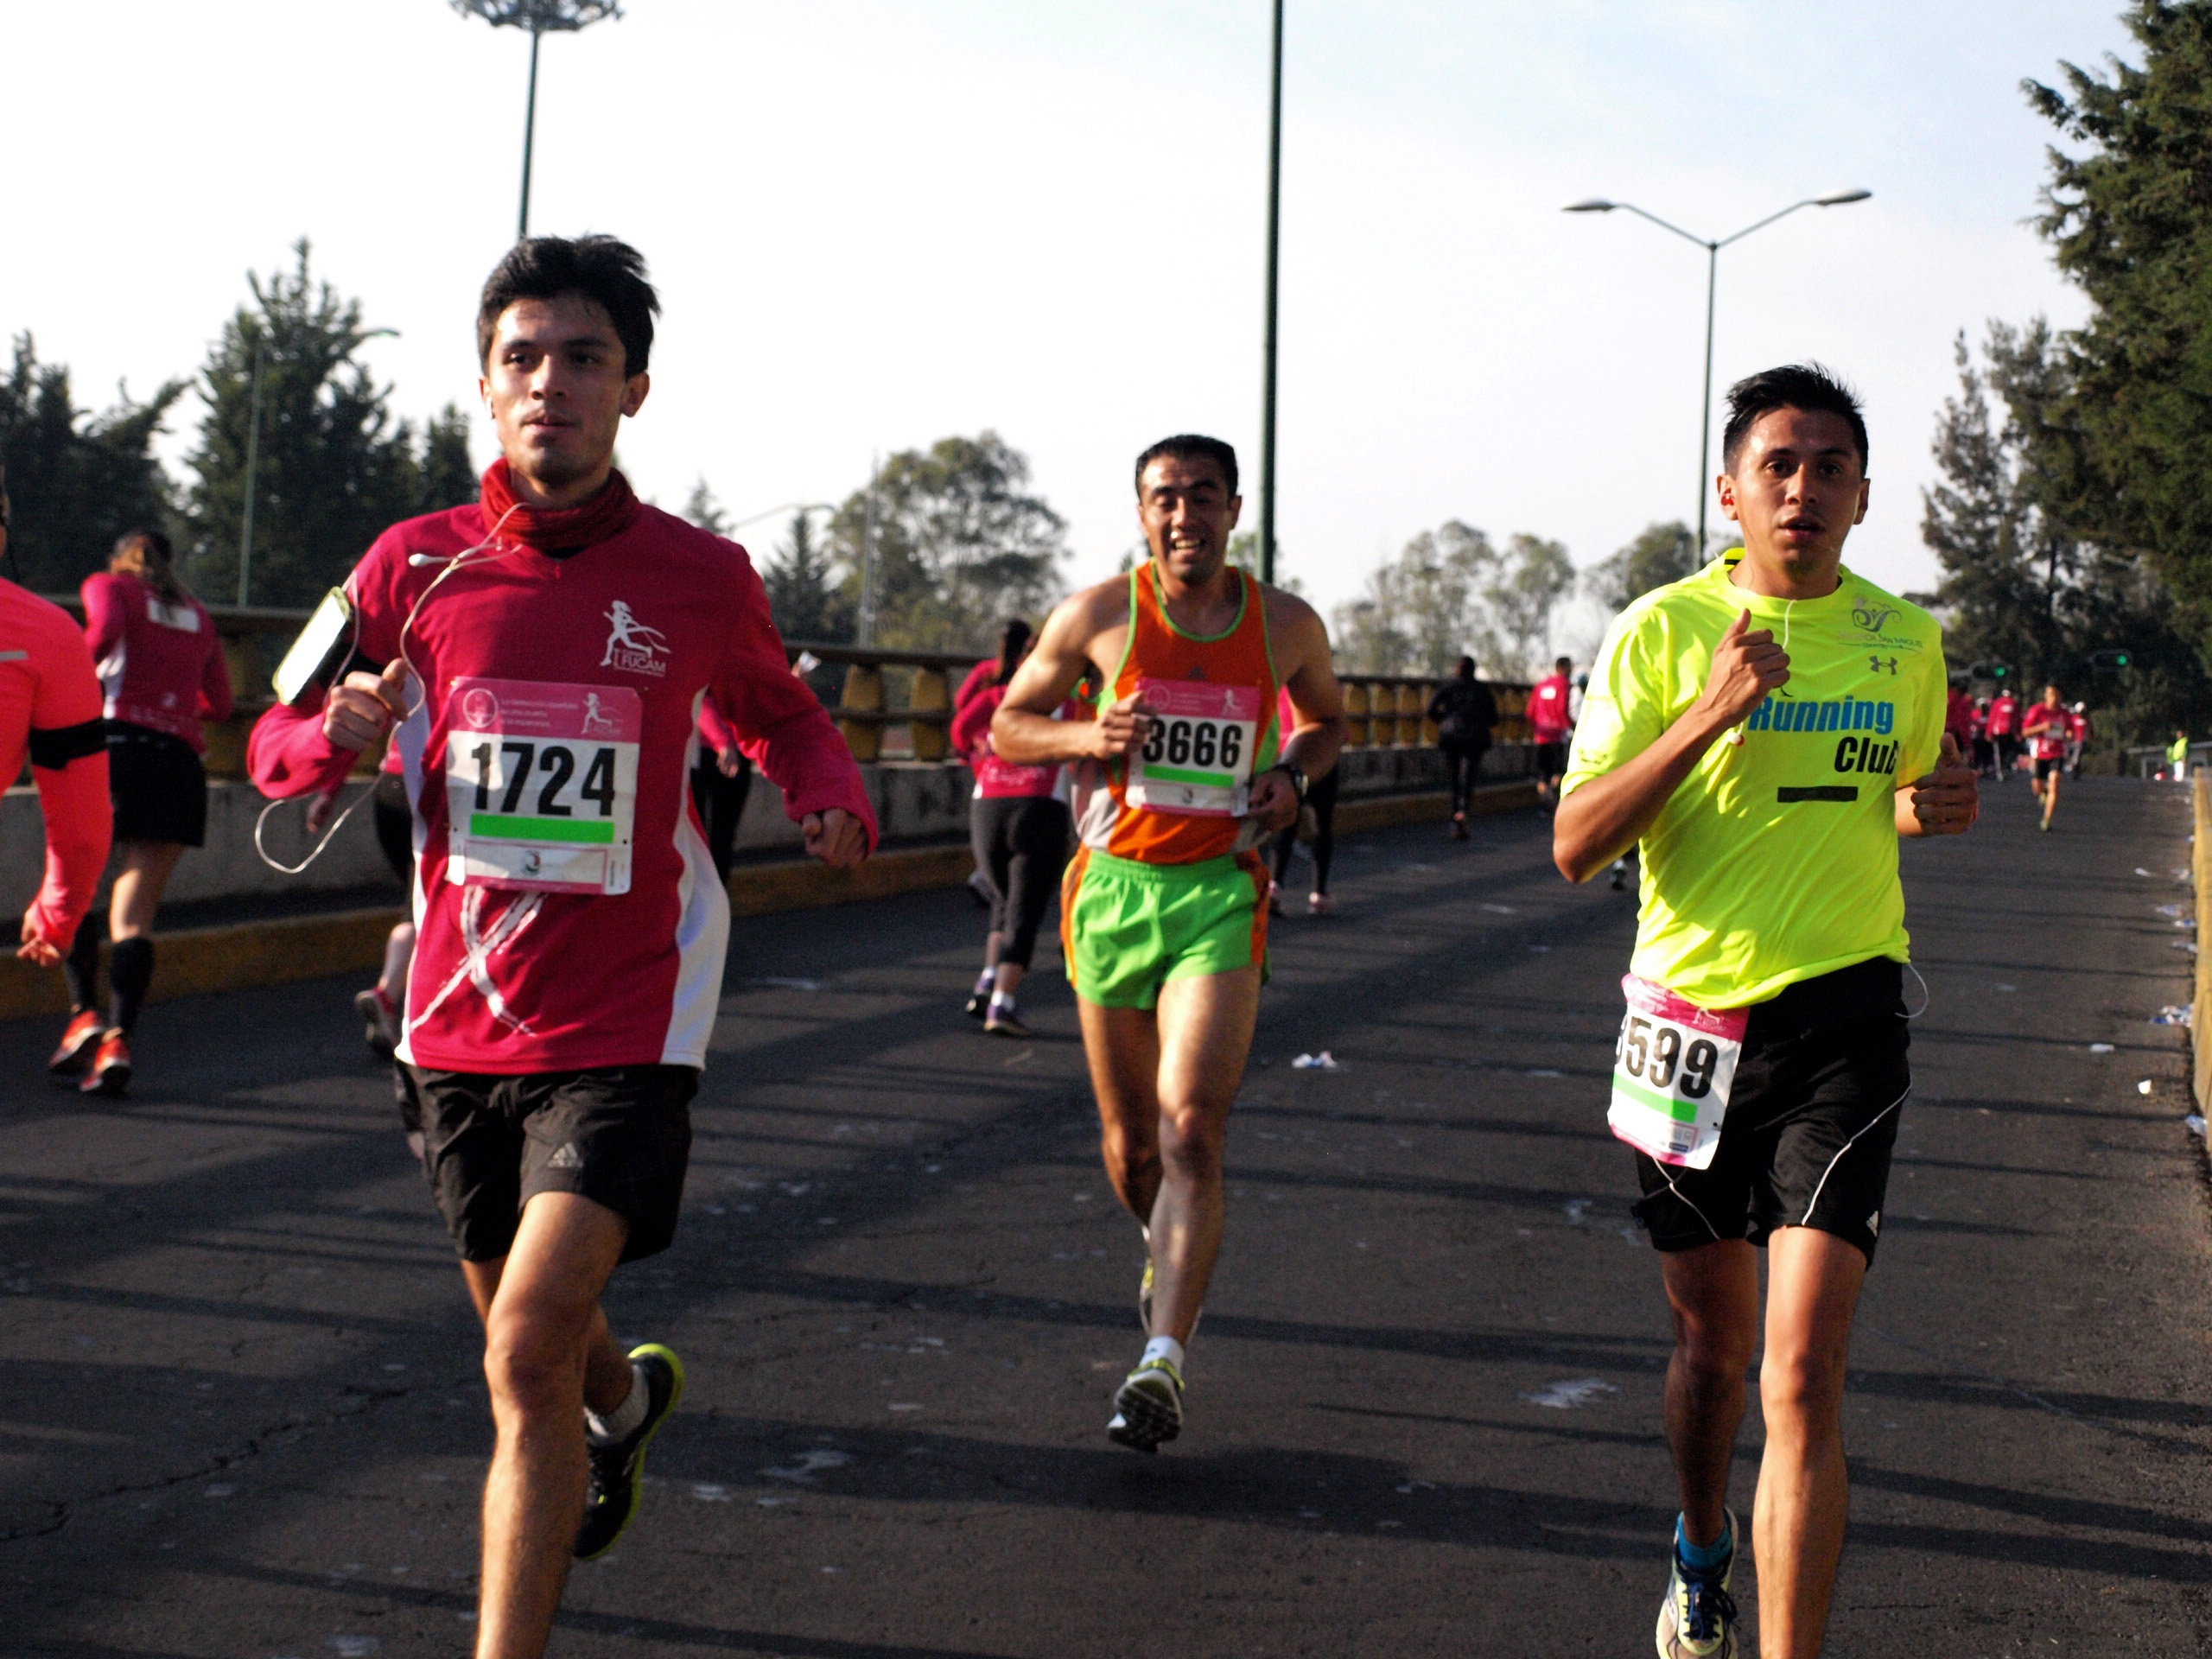 Jóvenes corredores compitiendo en una carrera